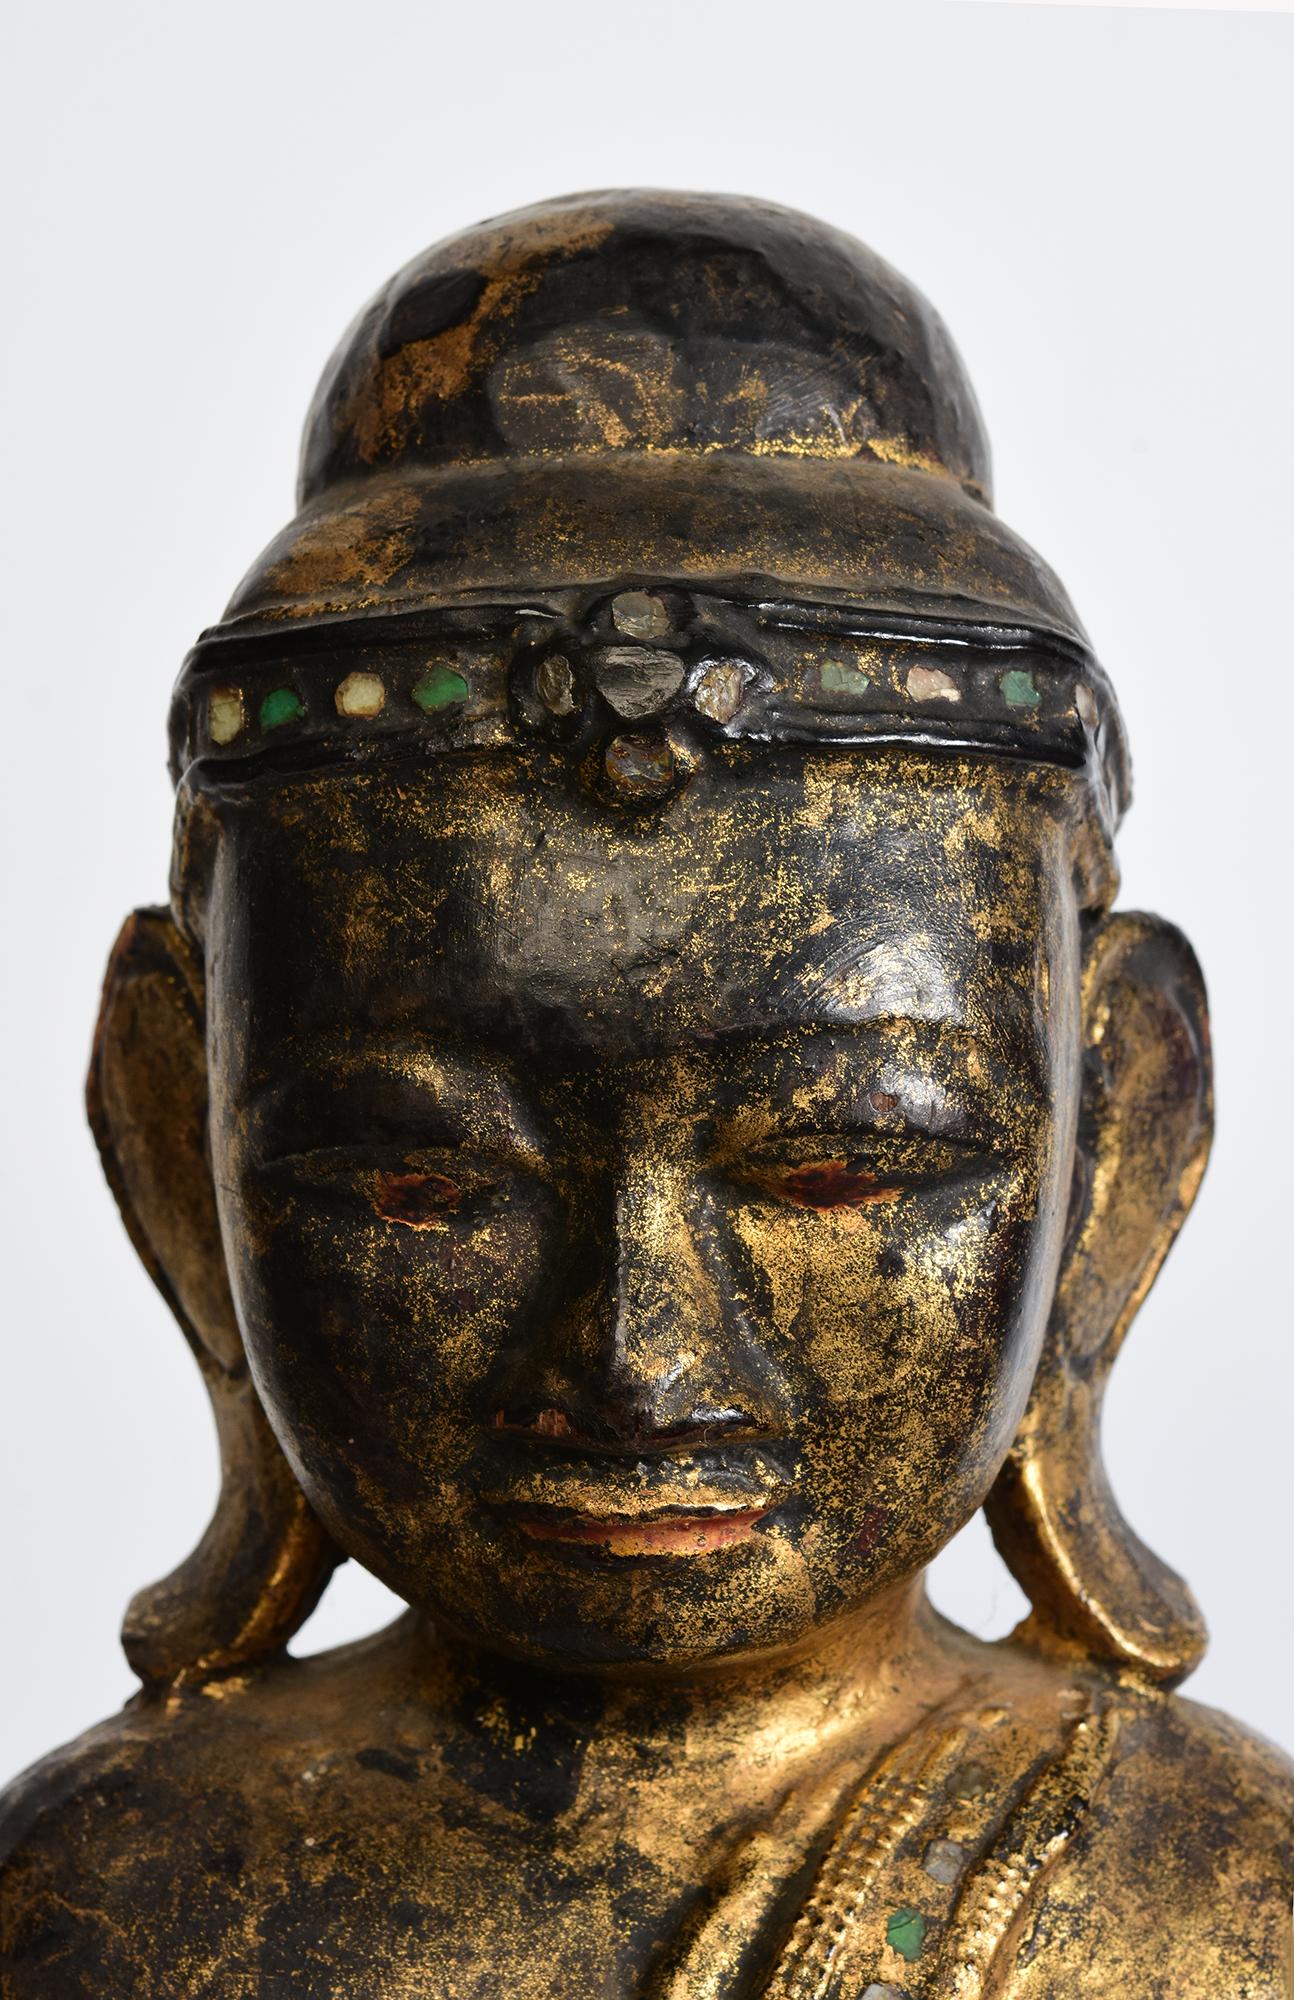 Antiker burmesischer Holzbuddha auf einem Lotussockel stehend, mit Lackierung, Vergoldung und Einlage von bunten Glasstücken am Stirnband und an den Rändern des Gewandes. 

Alter: Birma, Mandalay-Periode, 19. Jahrhundert
Größe des Buddhas allein: